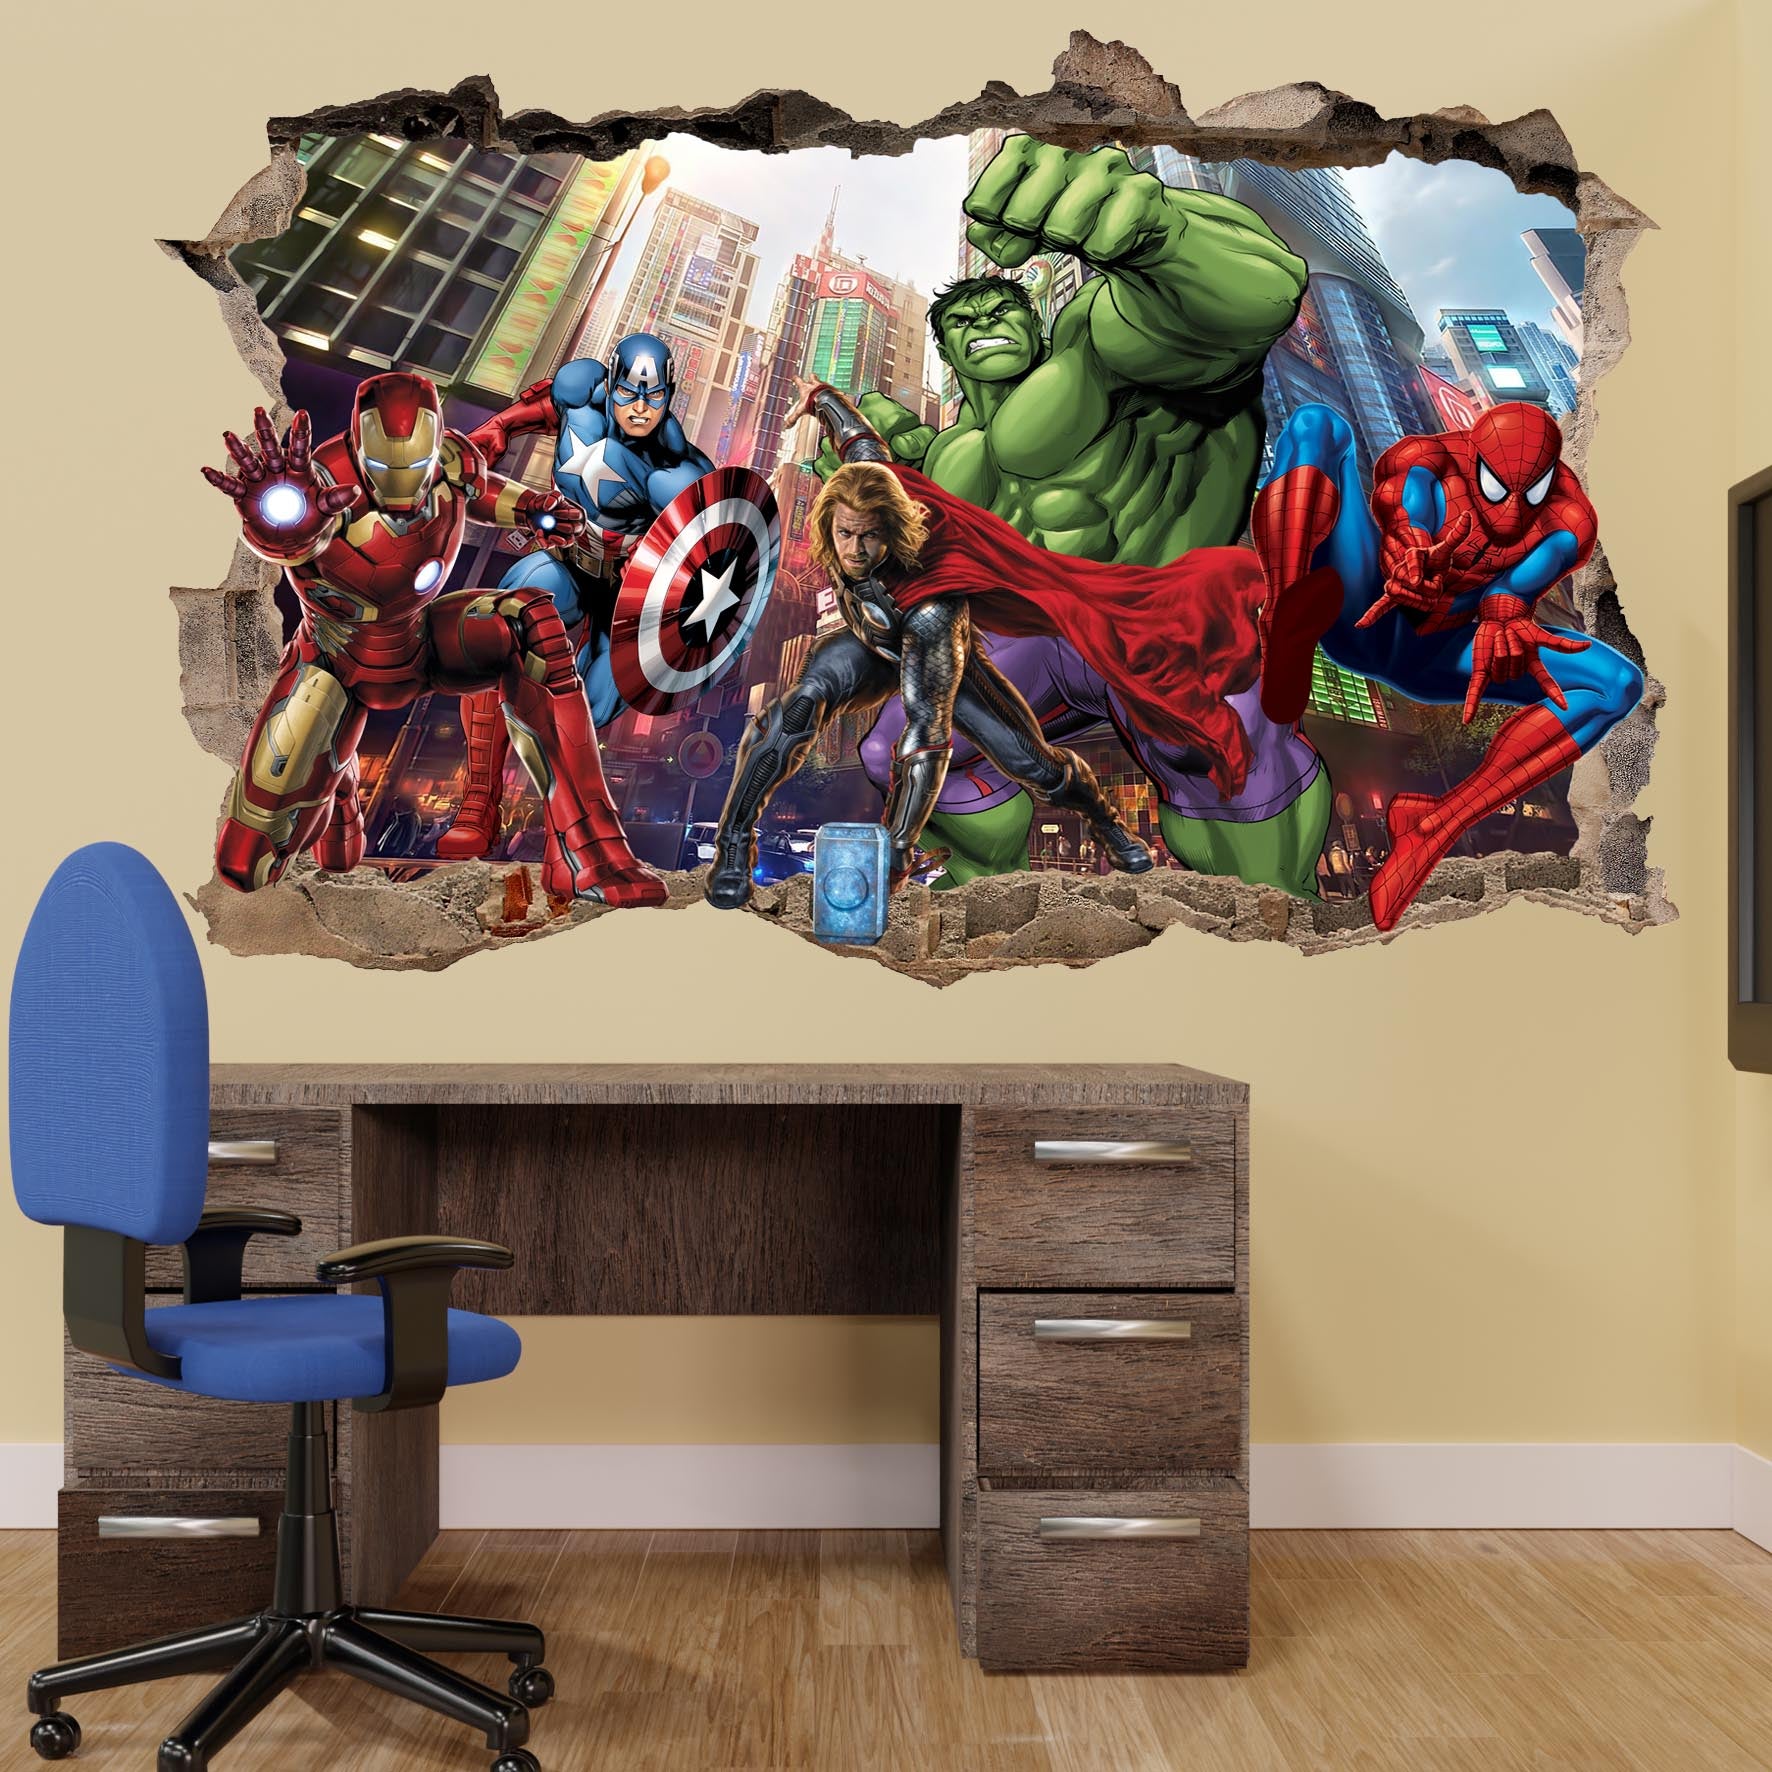 Spiderman Ironman All Avengers Wall Decal Sticker Mural 3D Art Poster Office Nursery Home Decor